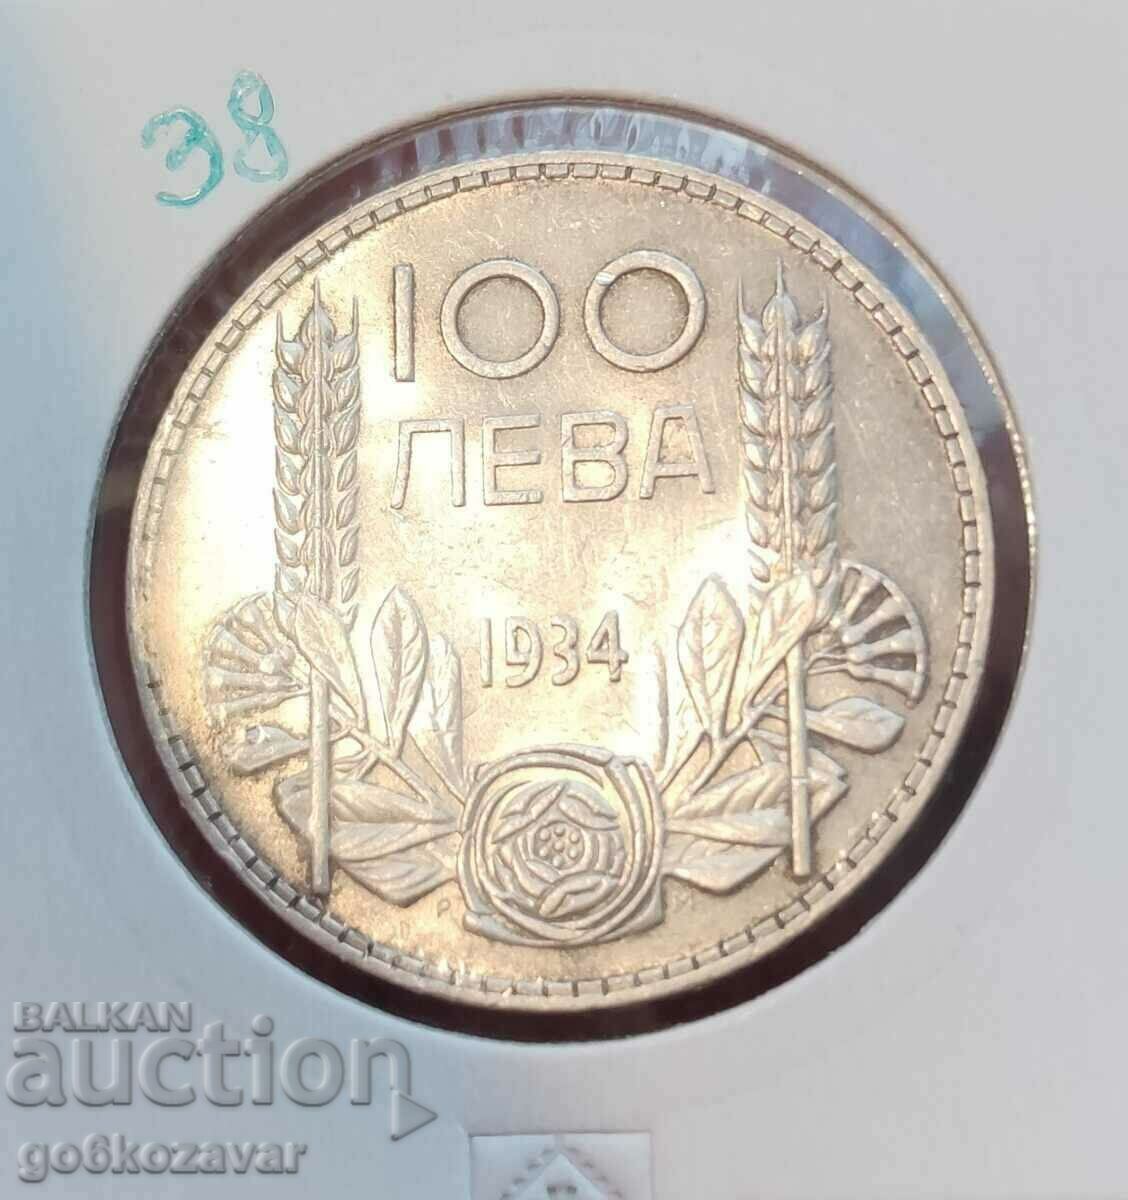 България 100лв 1934г Сребро.Топ монета за колекция!